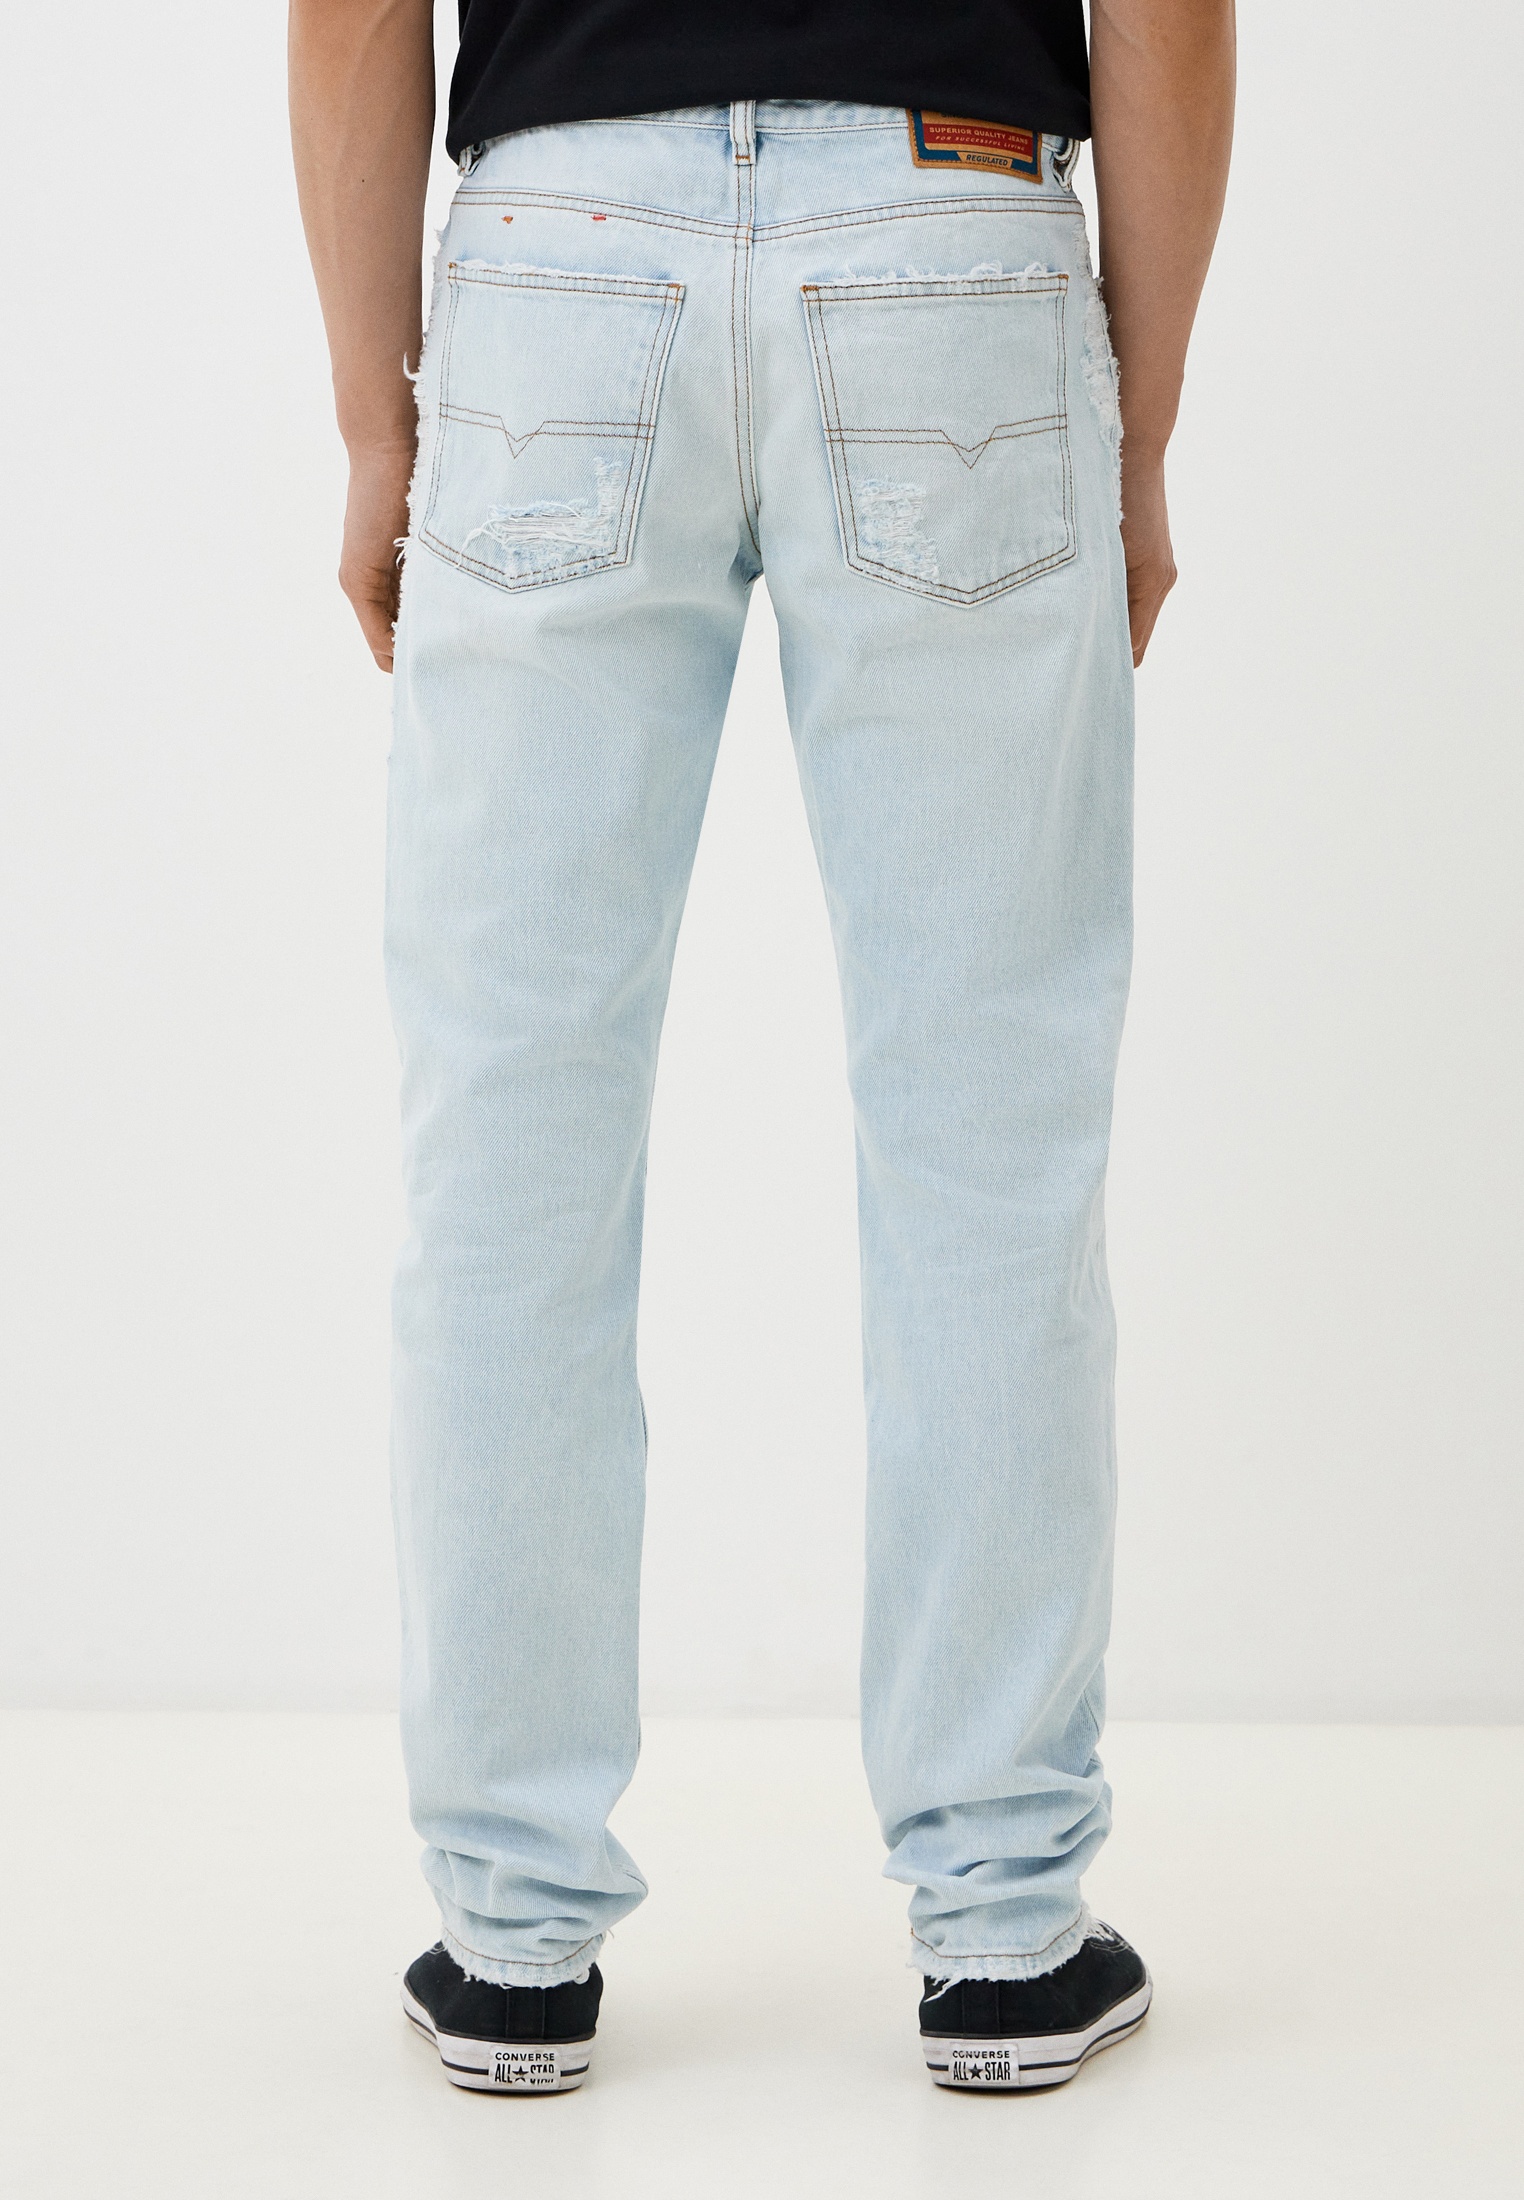 Мужские зауженные джинсы Diesel (Дизель) A04346007M6: изображение 3